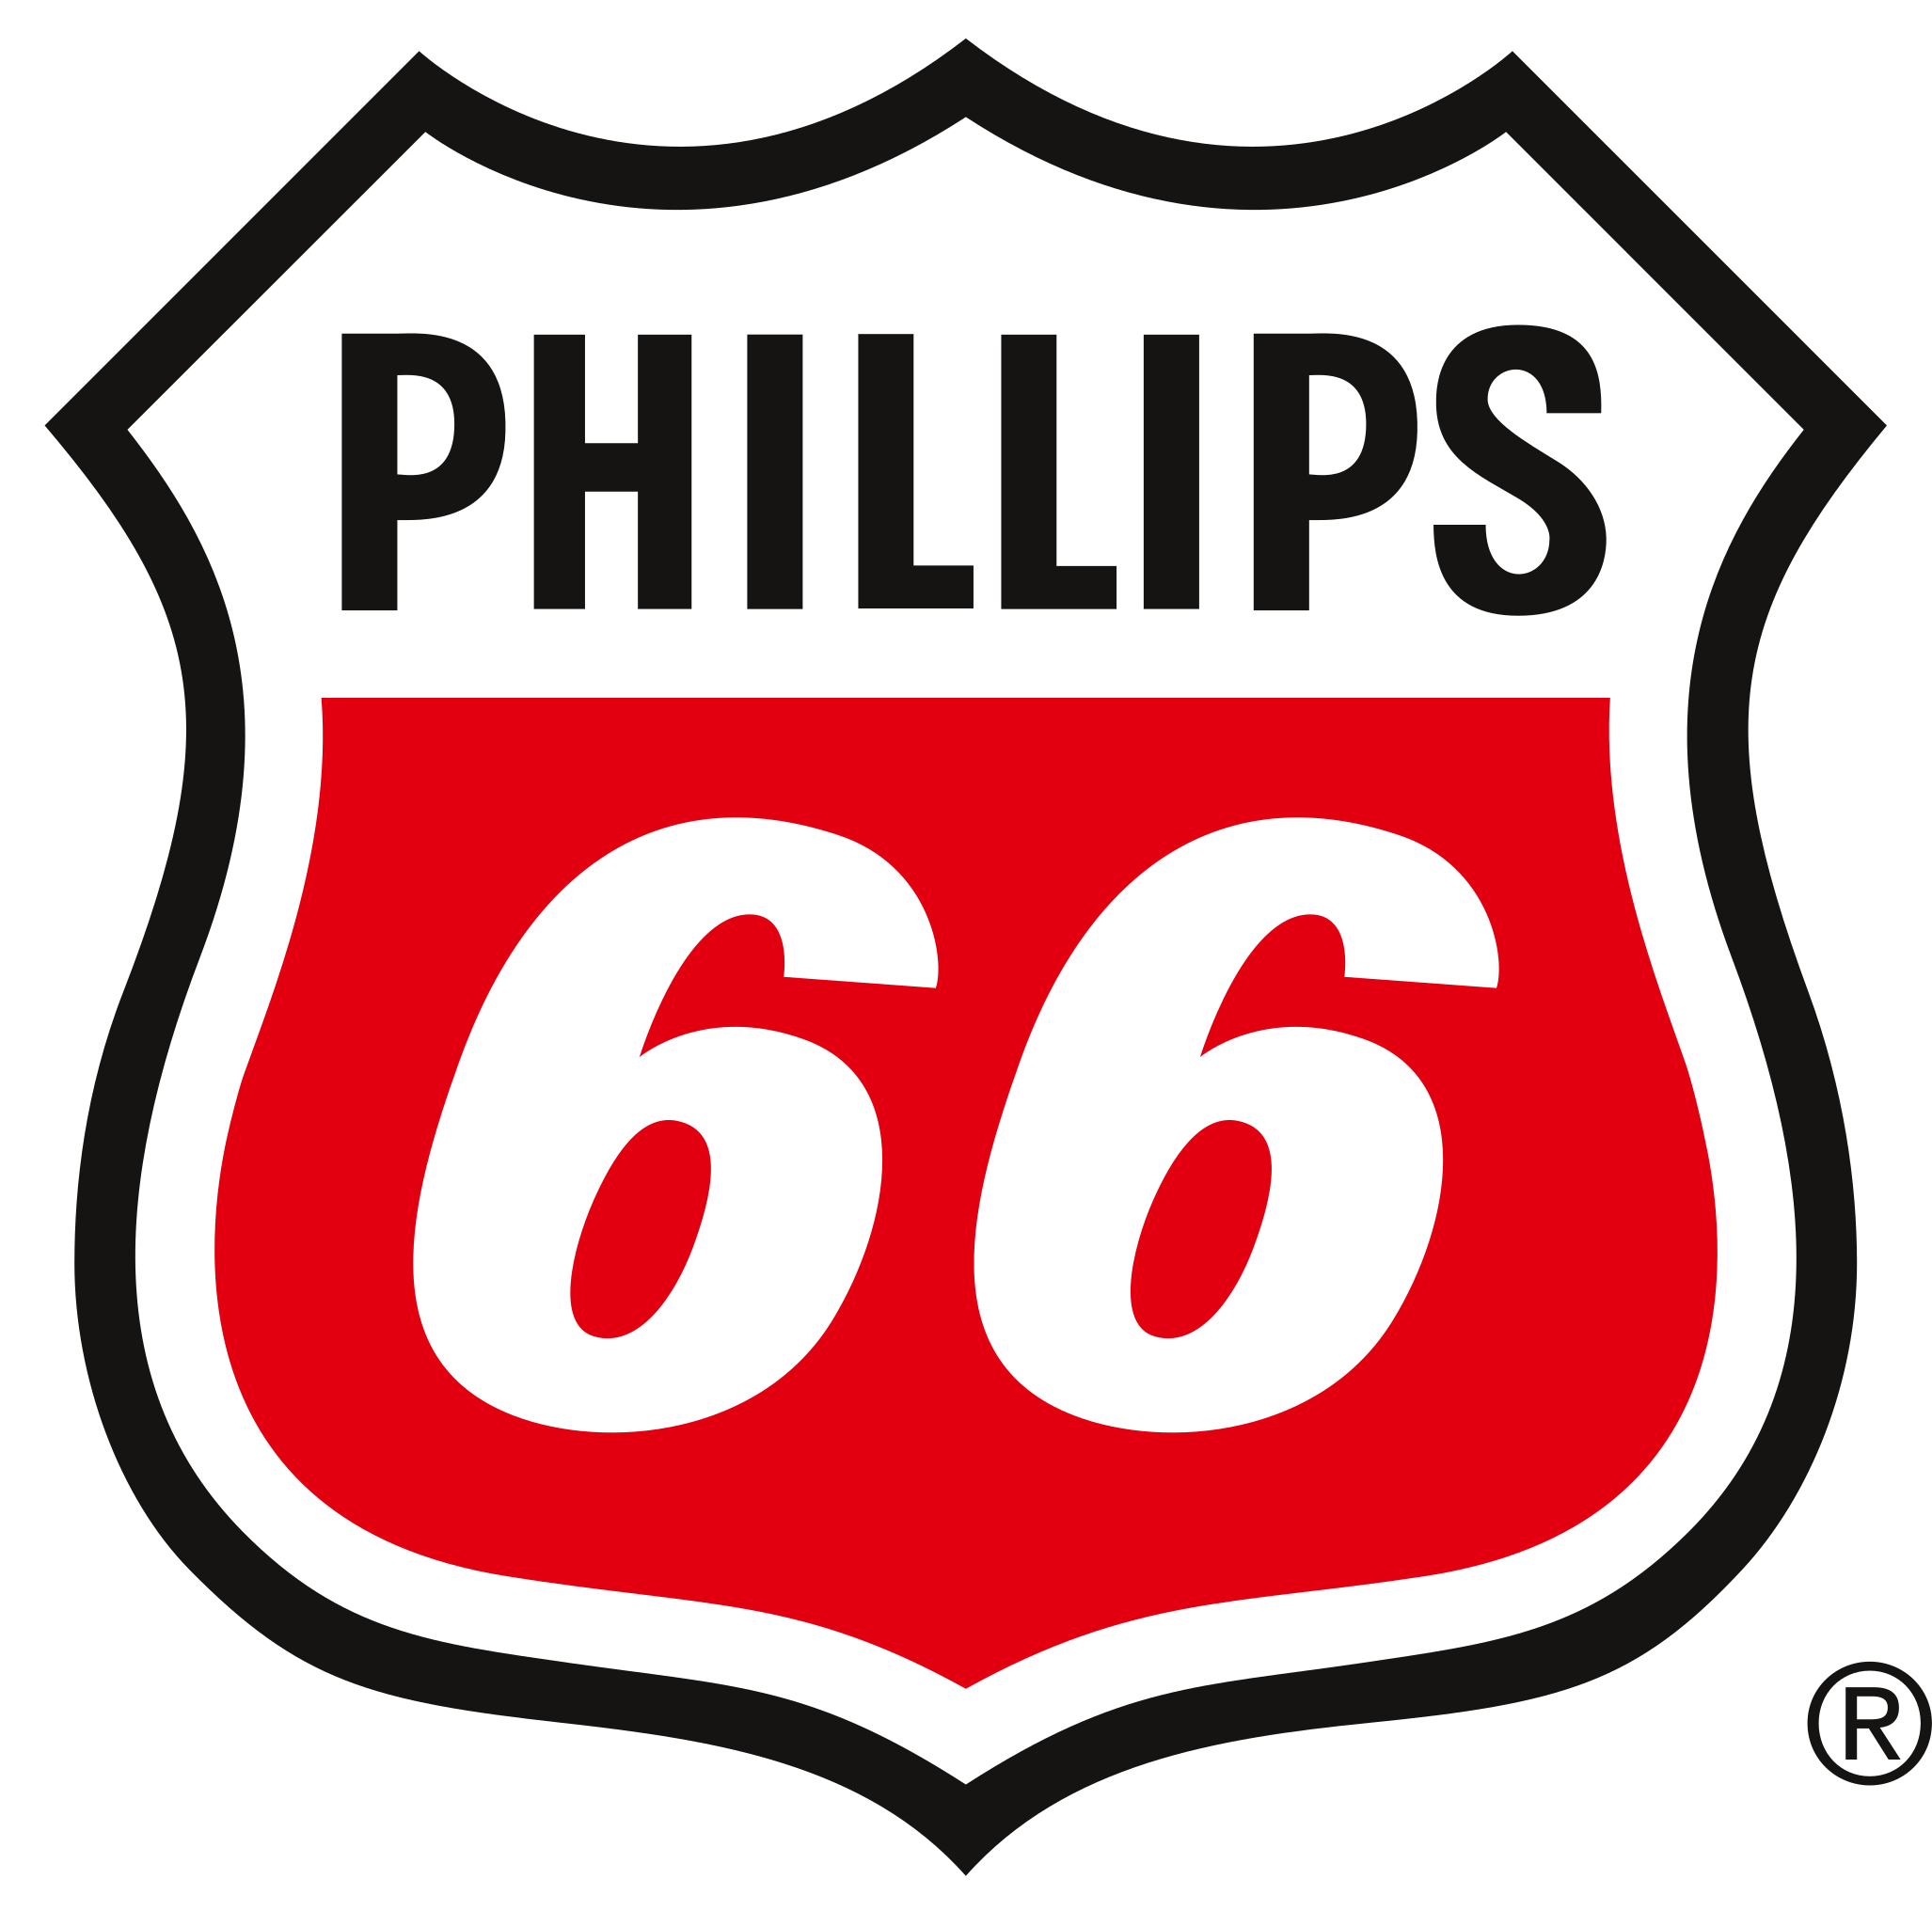 Phillips66-Logo